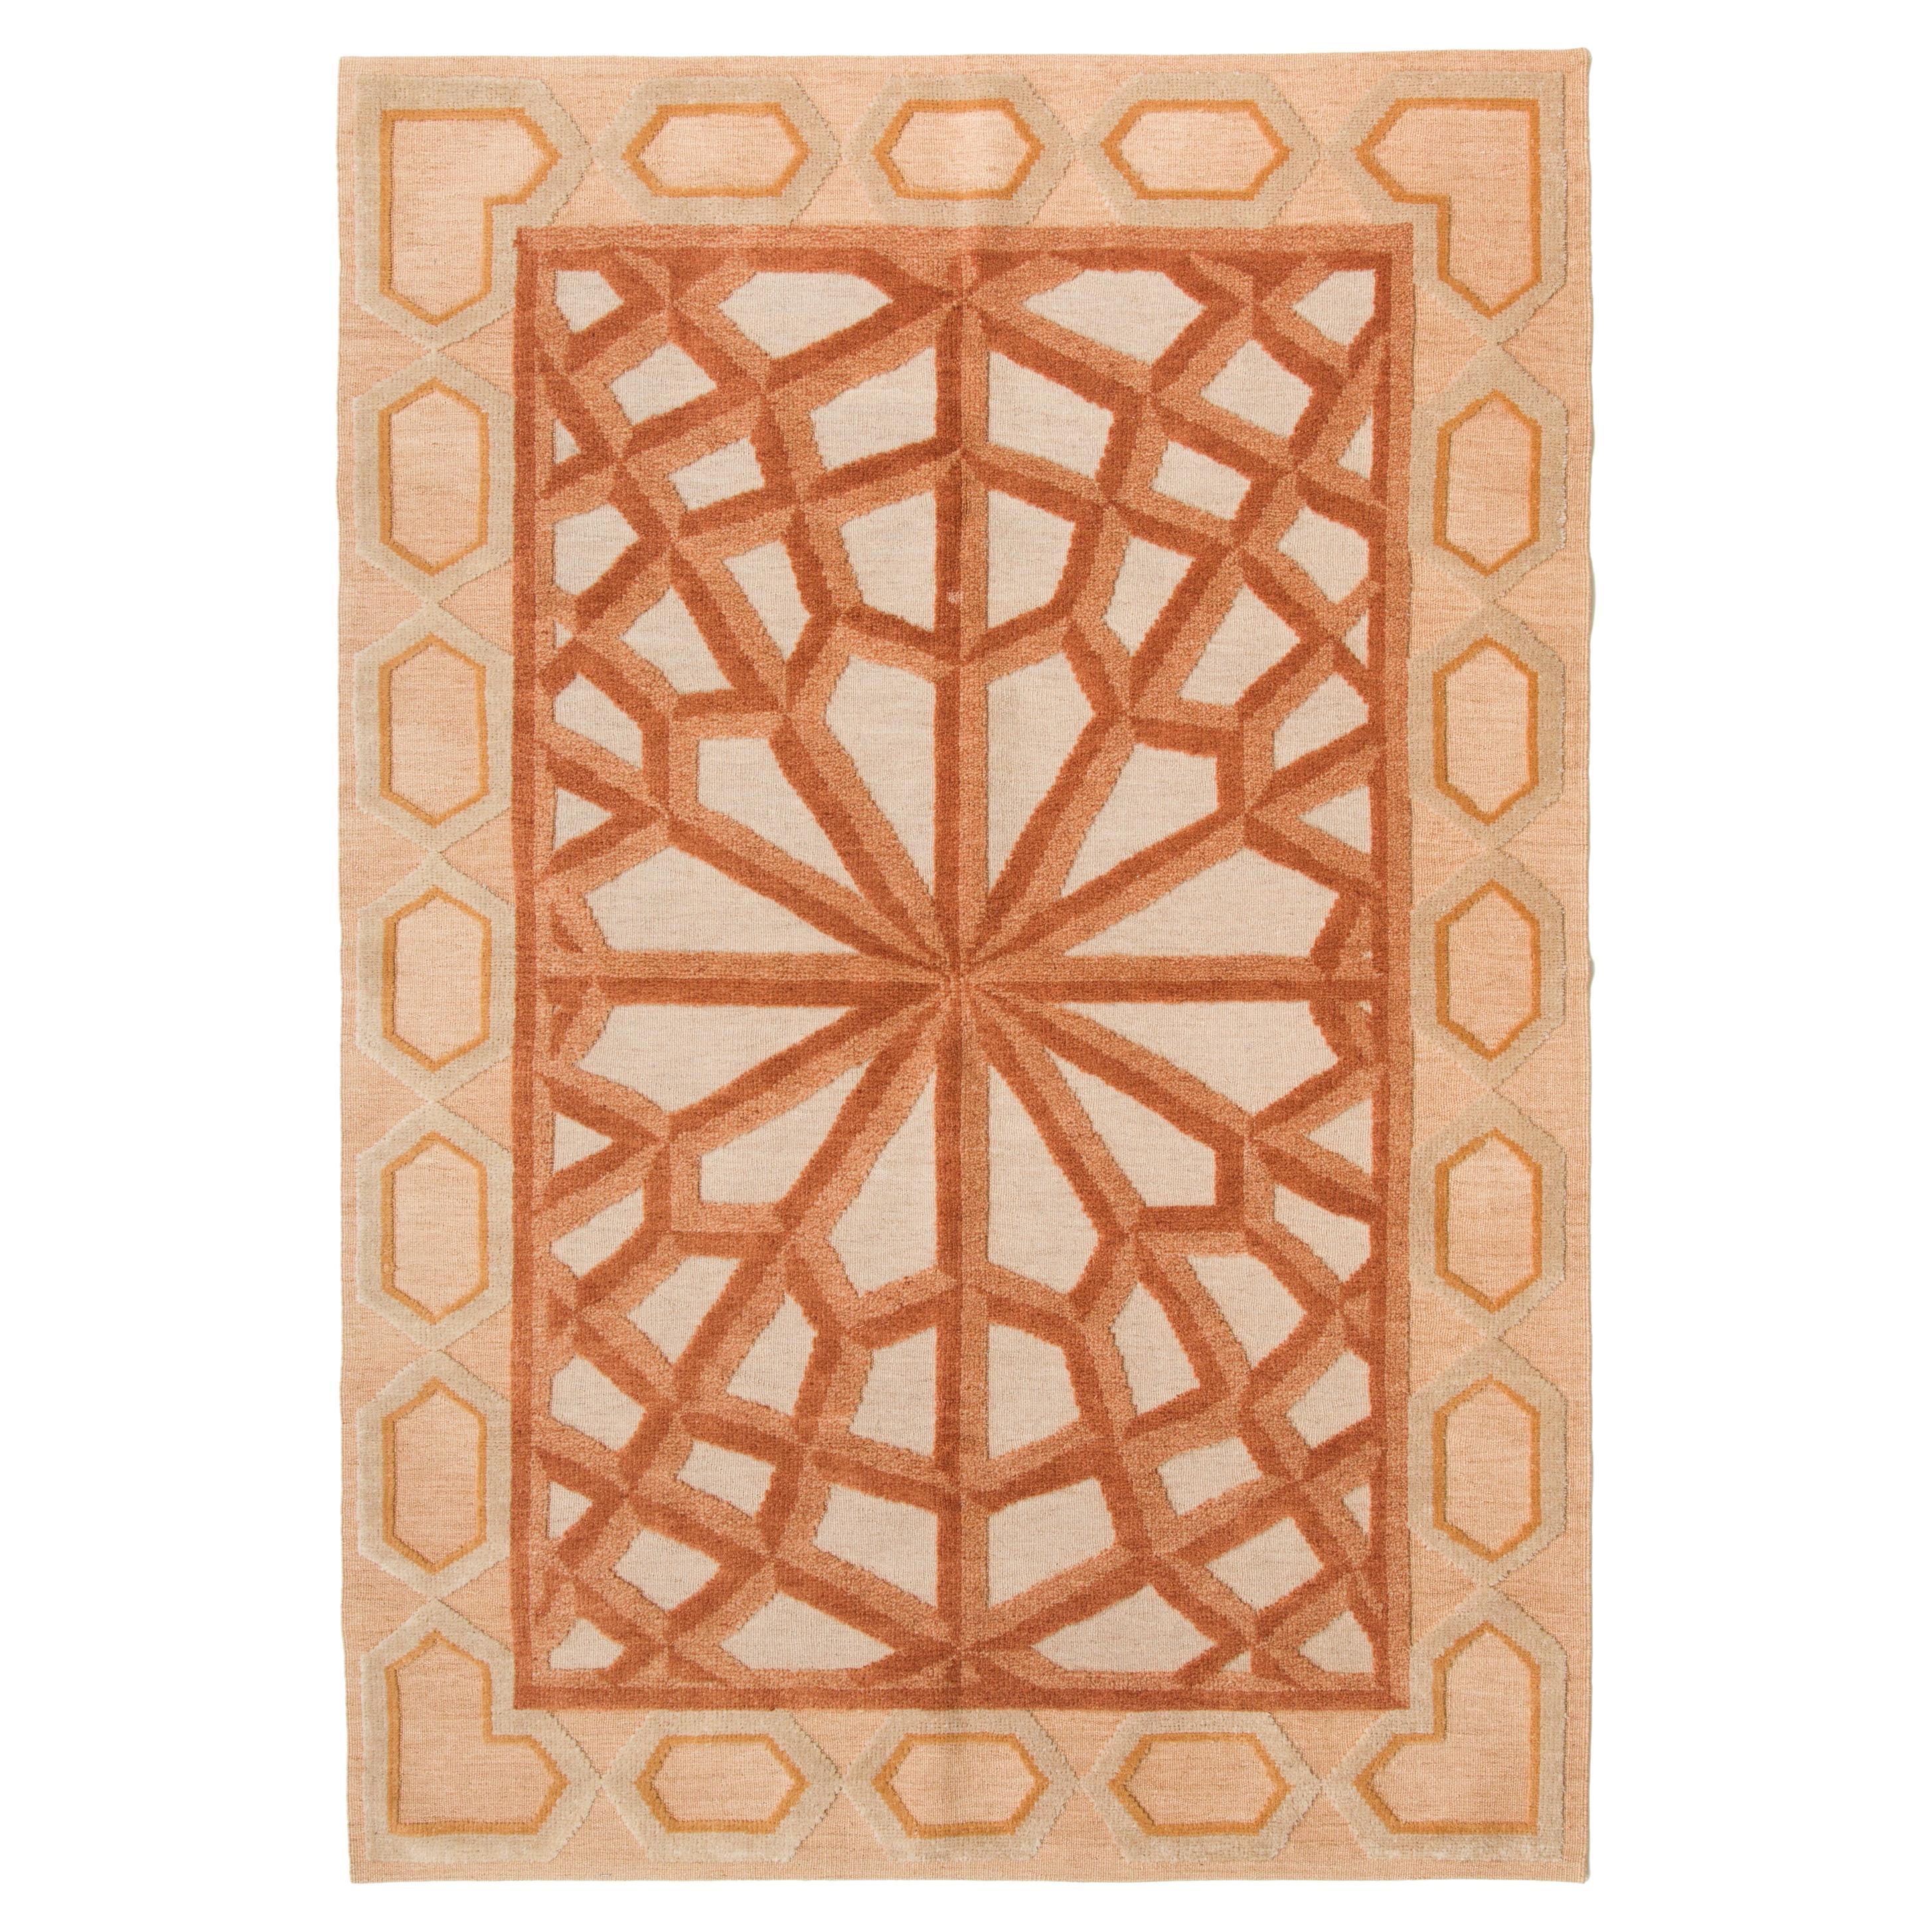 Ararat Teppich Kollektion Moderner Flachgewebter Kelim Teppich mit türkischem geometrischem Motiv